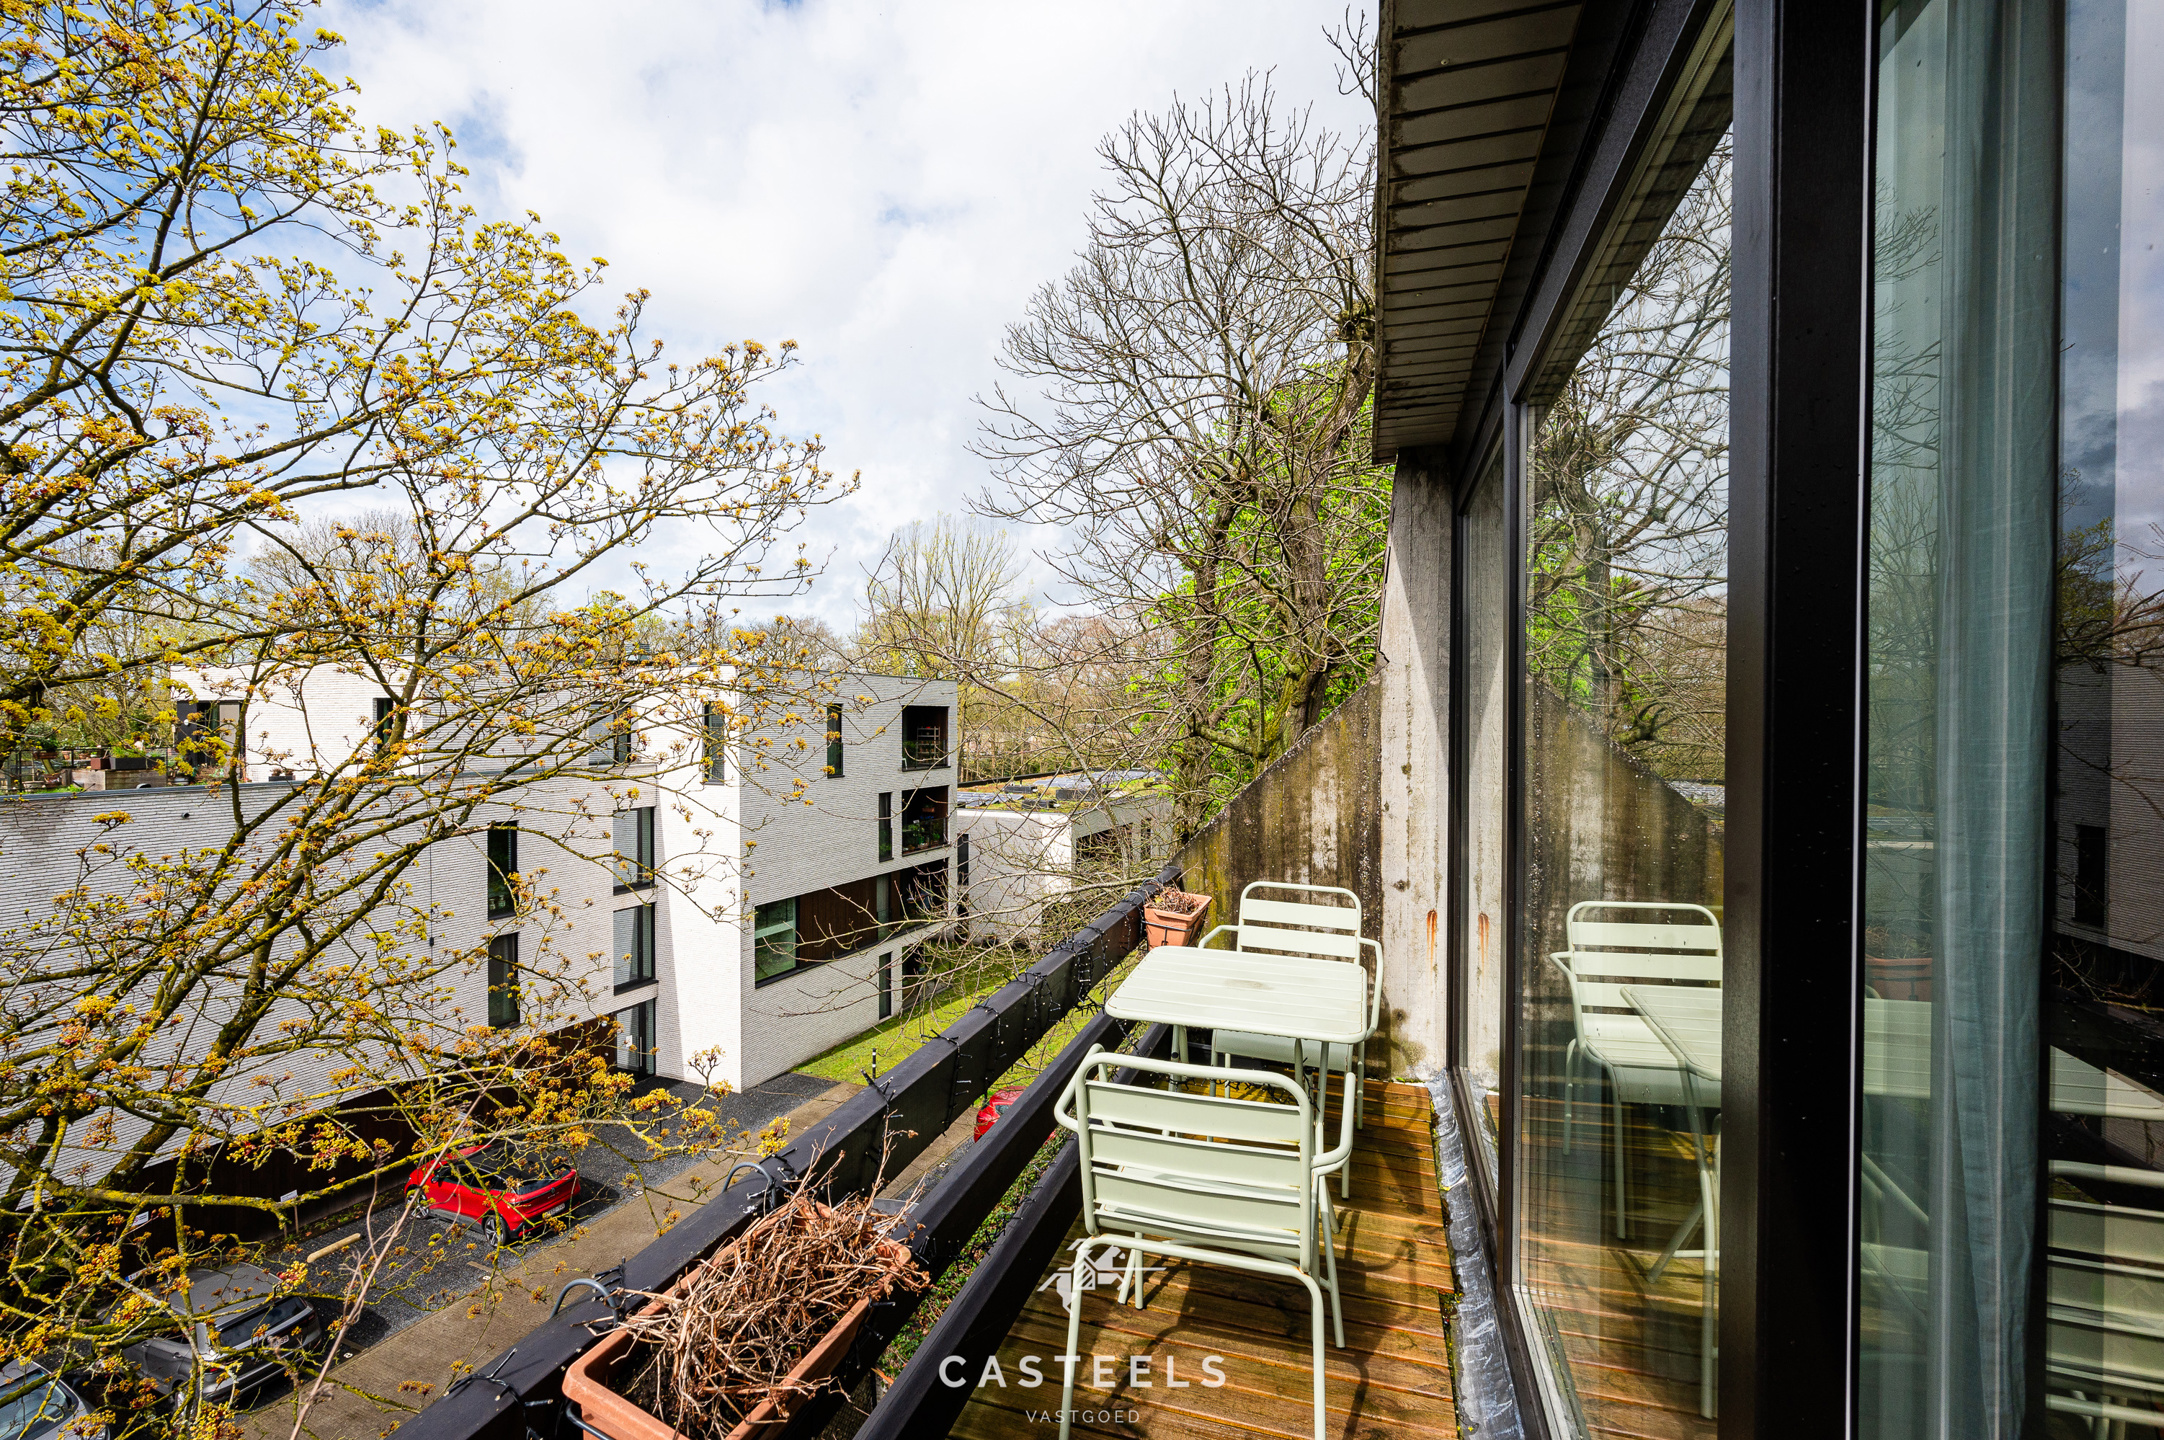 Afbeelding 2-slaapkamer appartement met terras te koop in Merelbeke - Casteels Vastgoed